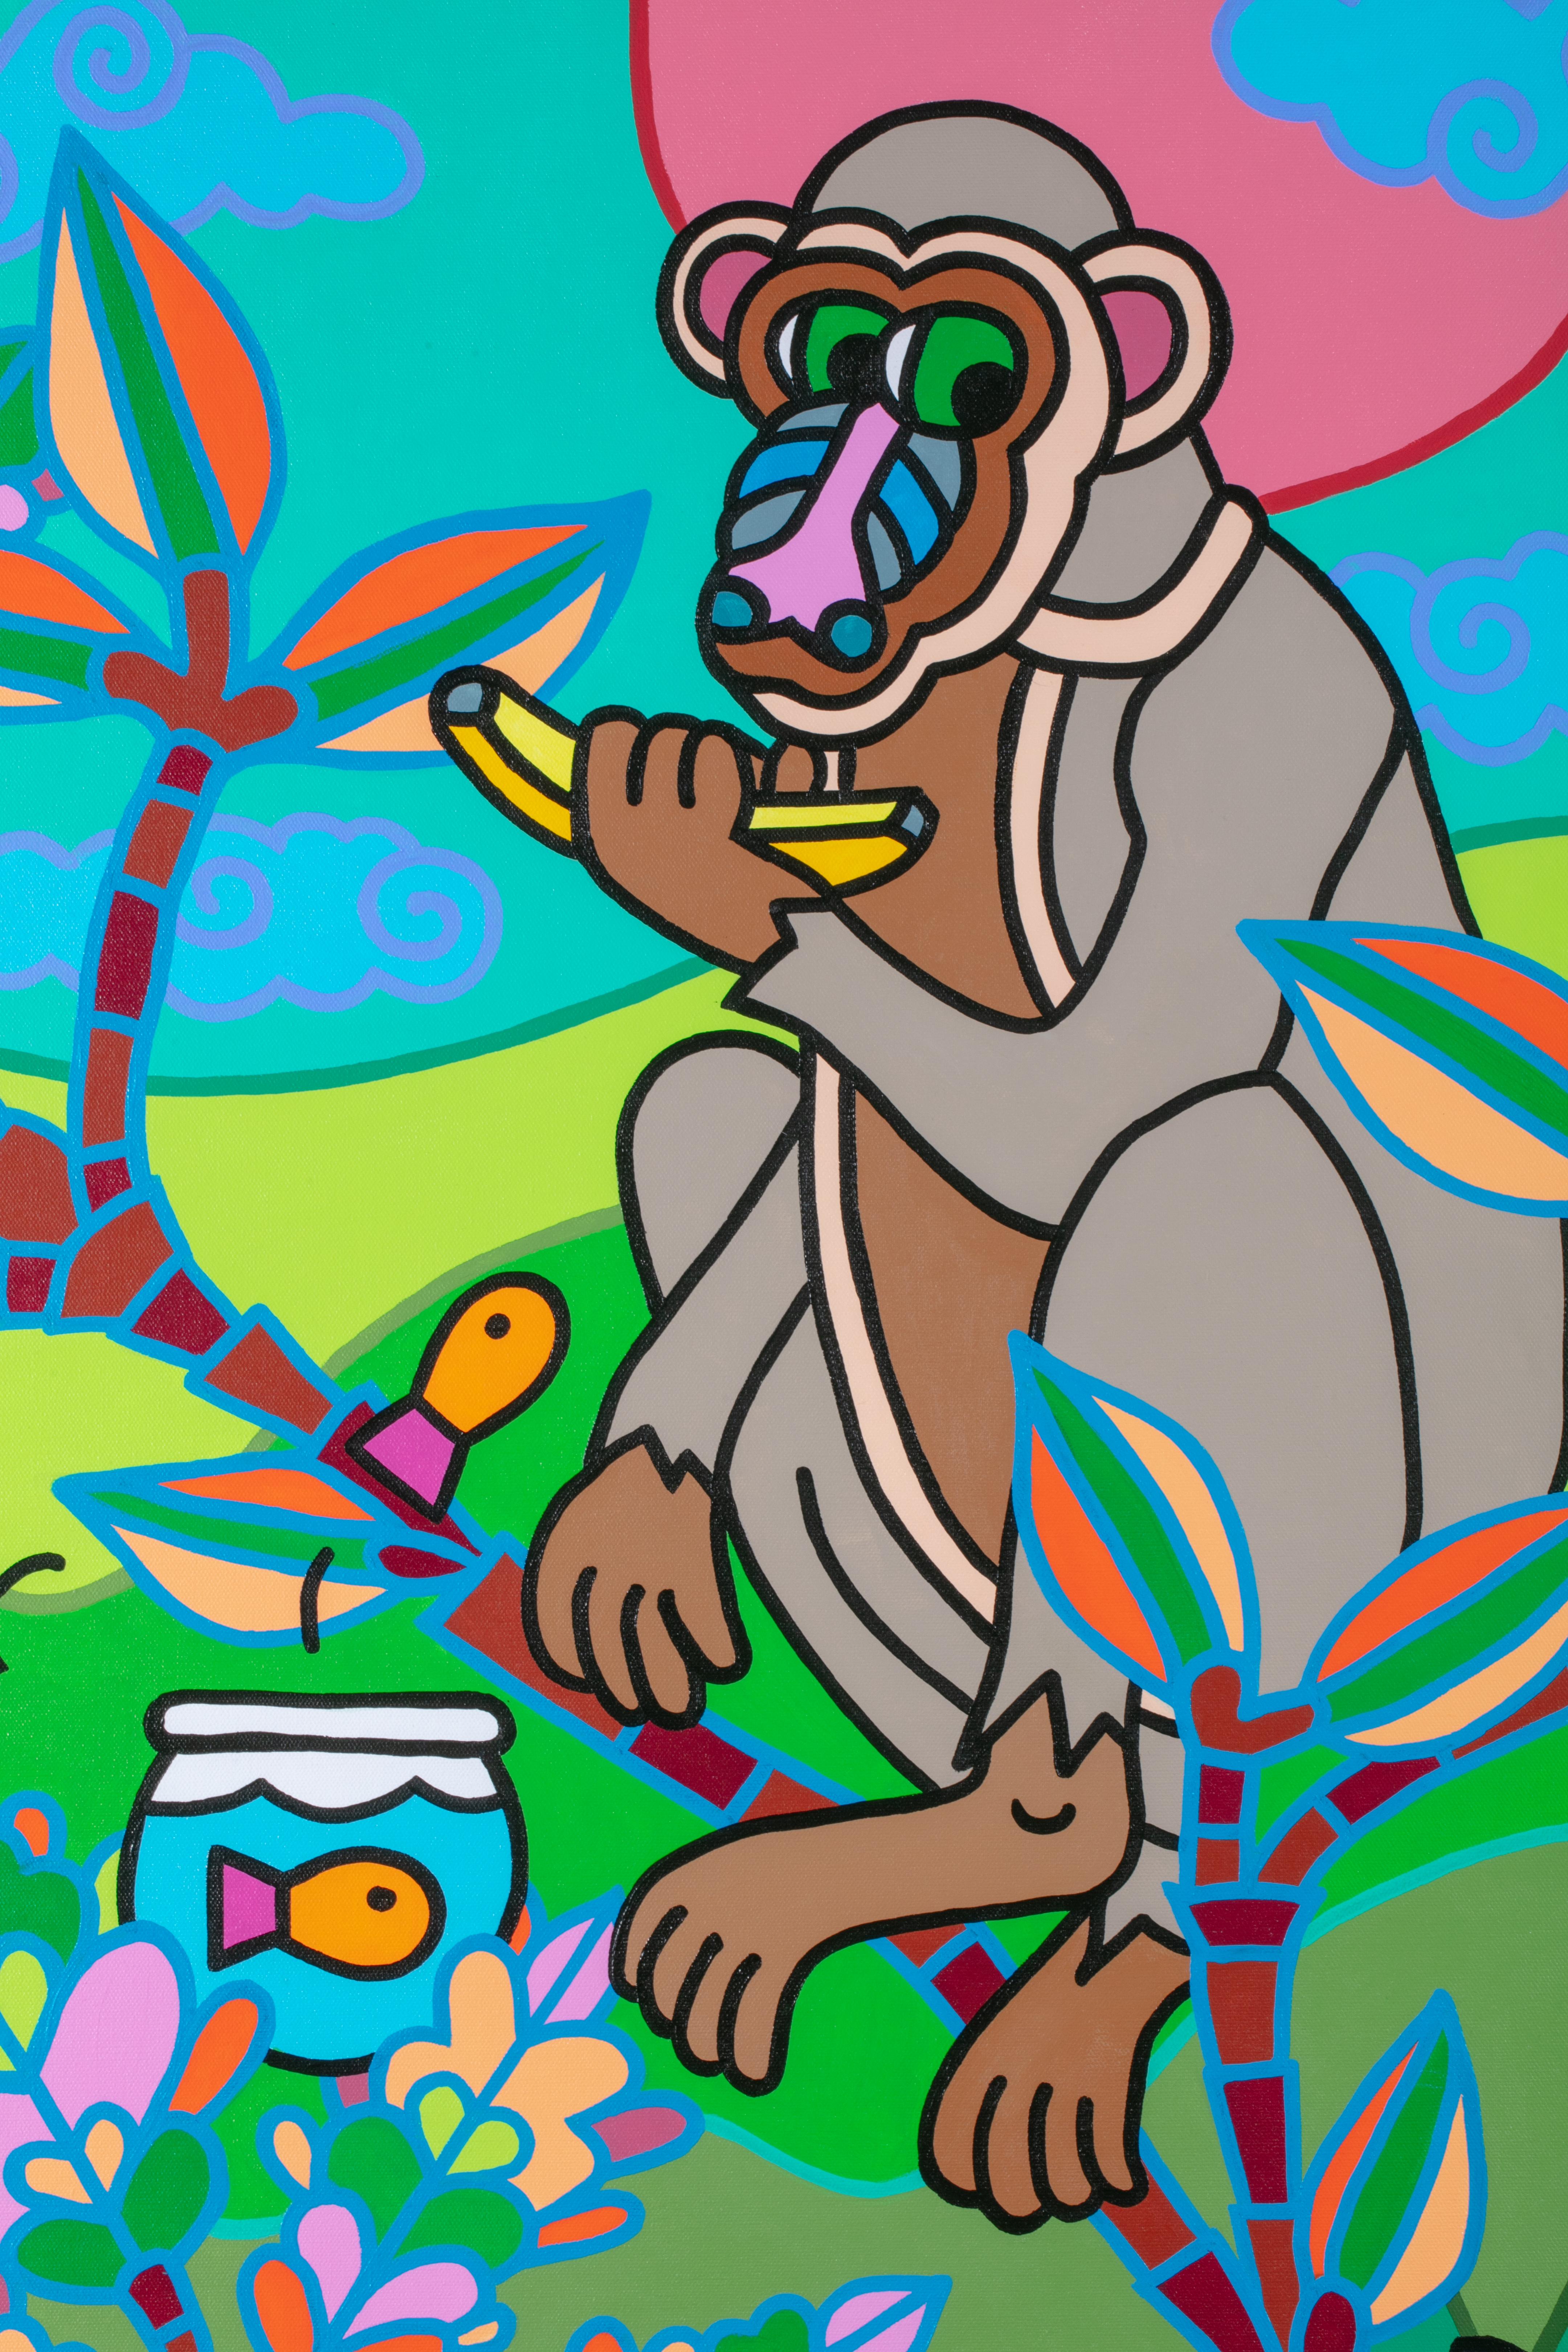 Party in Dschungelform aus der Chinoiserie (Pop-Art), Painting, von Charles Houska